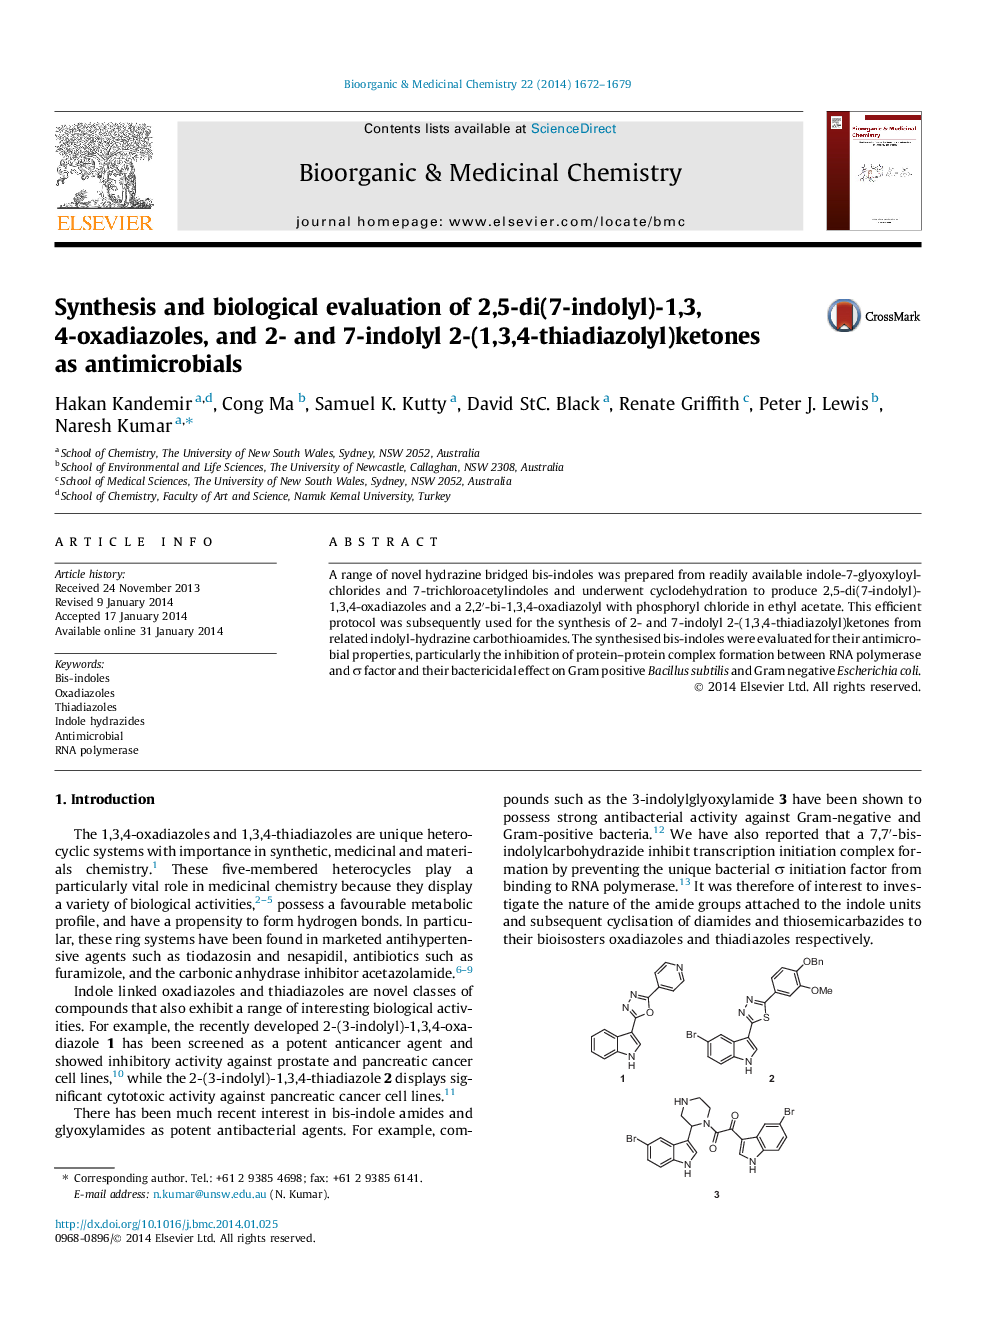 سنتز و بررسی بیولوژیکی از 2،5-دی (7-اندولیل) -1،3،4-اکسیدیاازول و 2- و 7-اندولیل 2- (1،3،4-تیادیازولیل) کتون به عنوان آنتی بیوتیک ها 